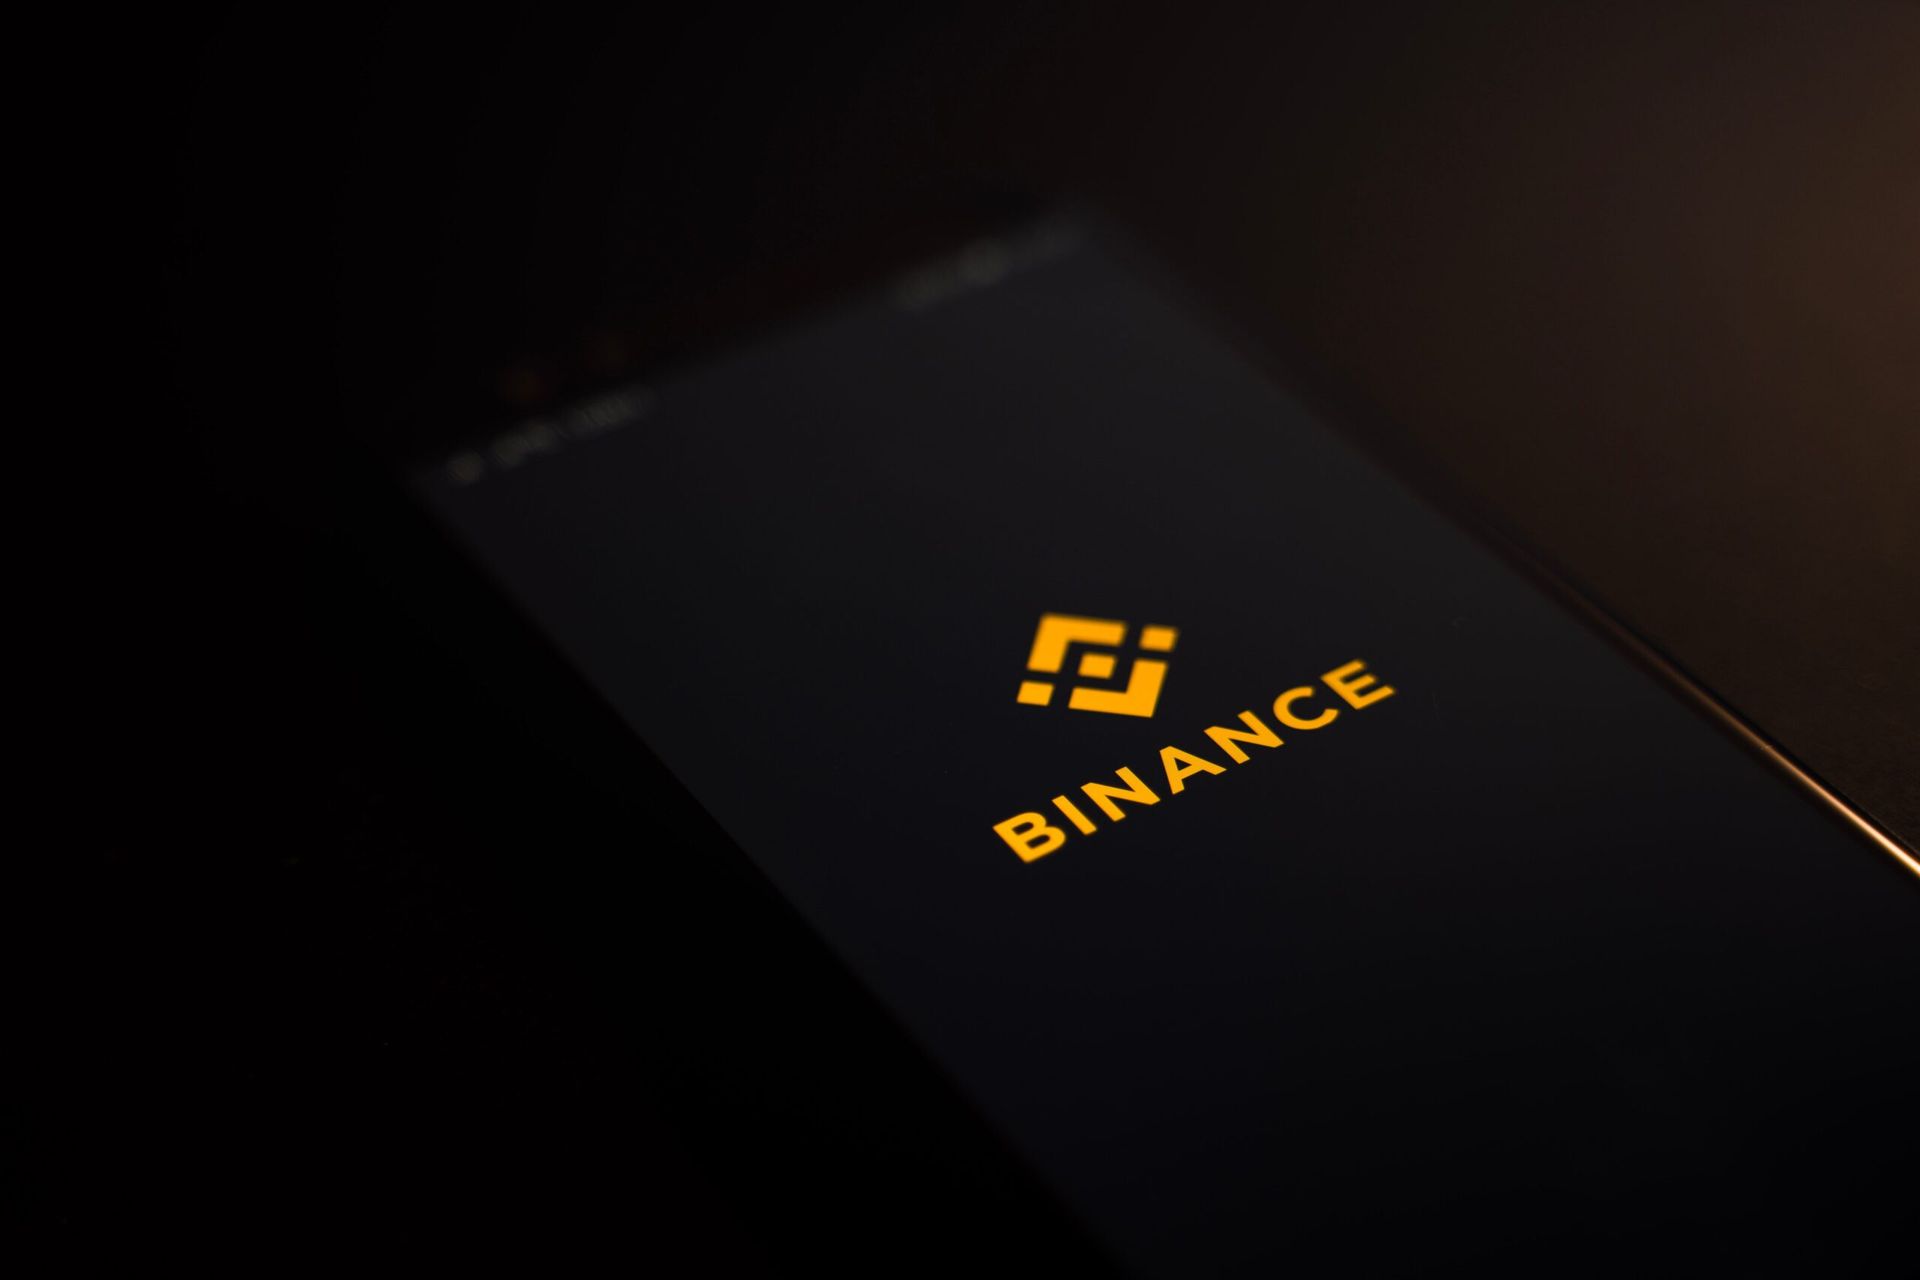 Binance app logo